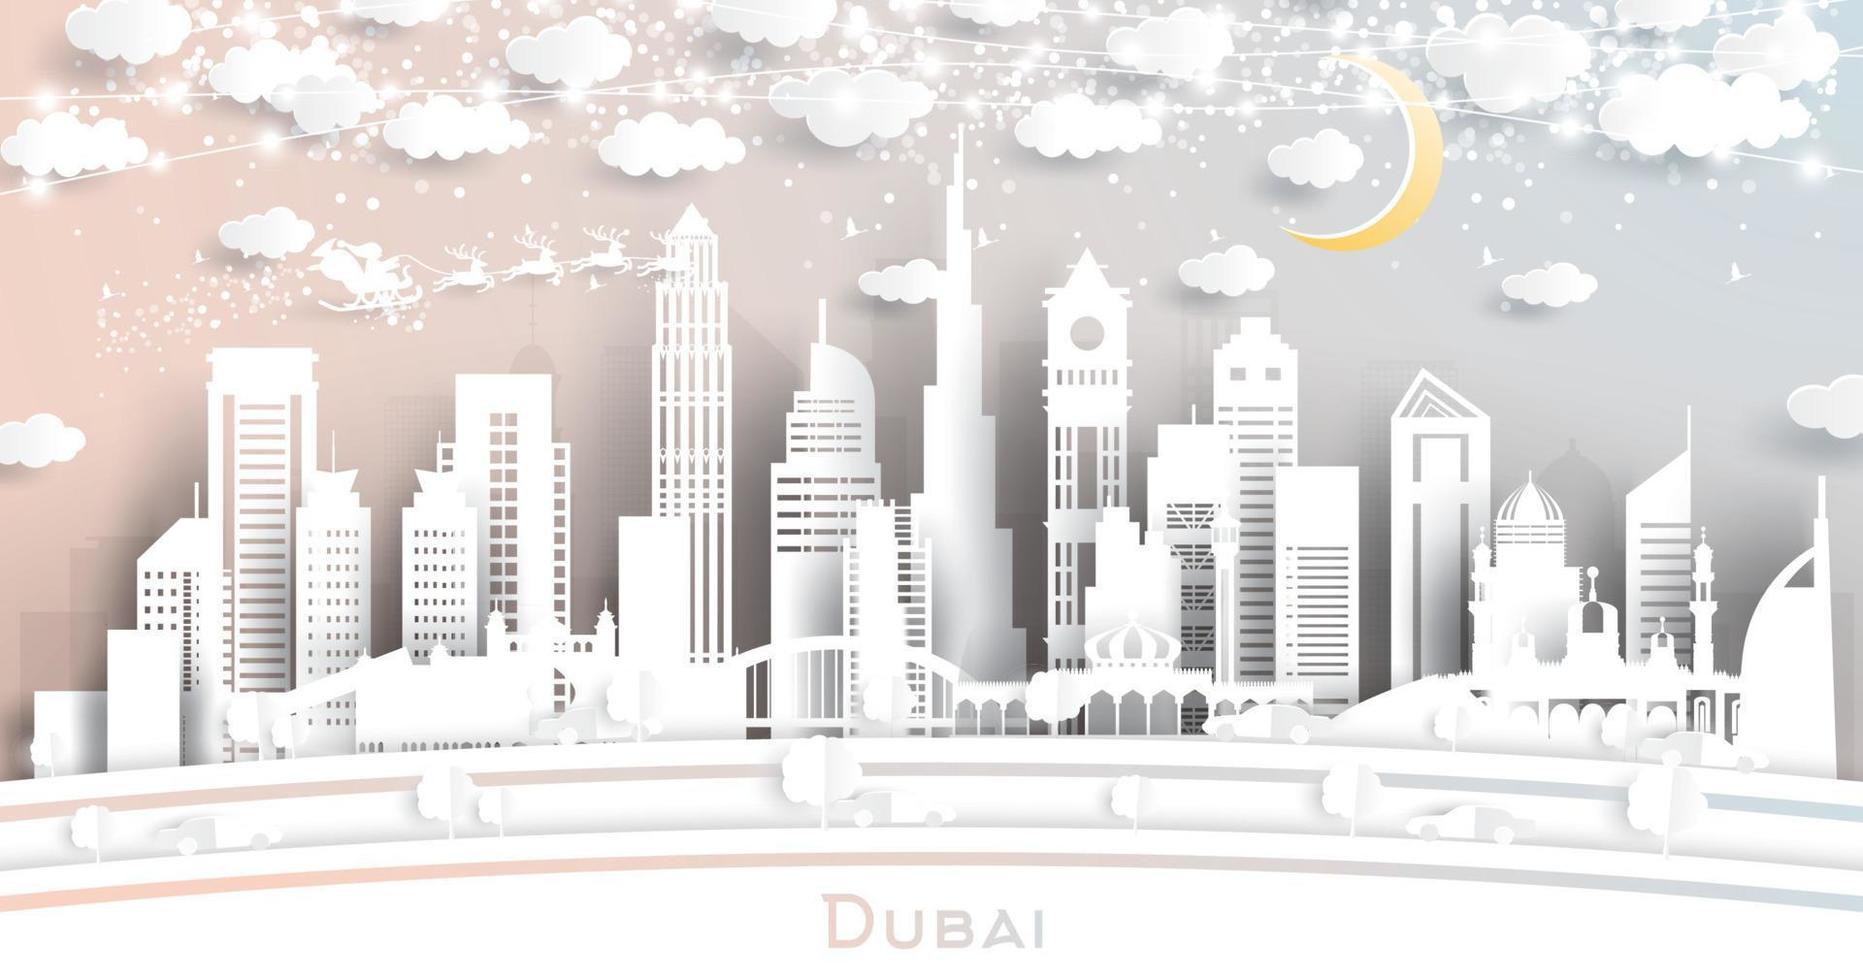 Dubai uae stad horizon in papier besnoeiing stijl met sneeuwvlokken, maan en neon guirlande. vector